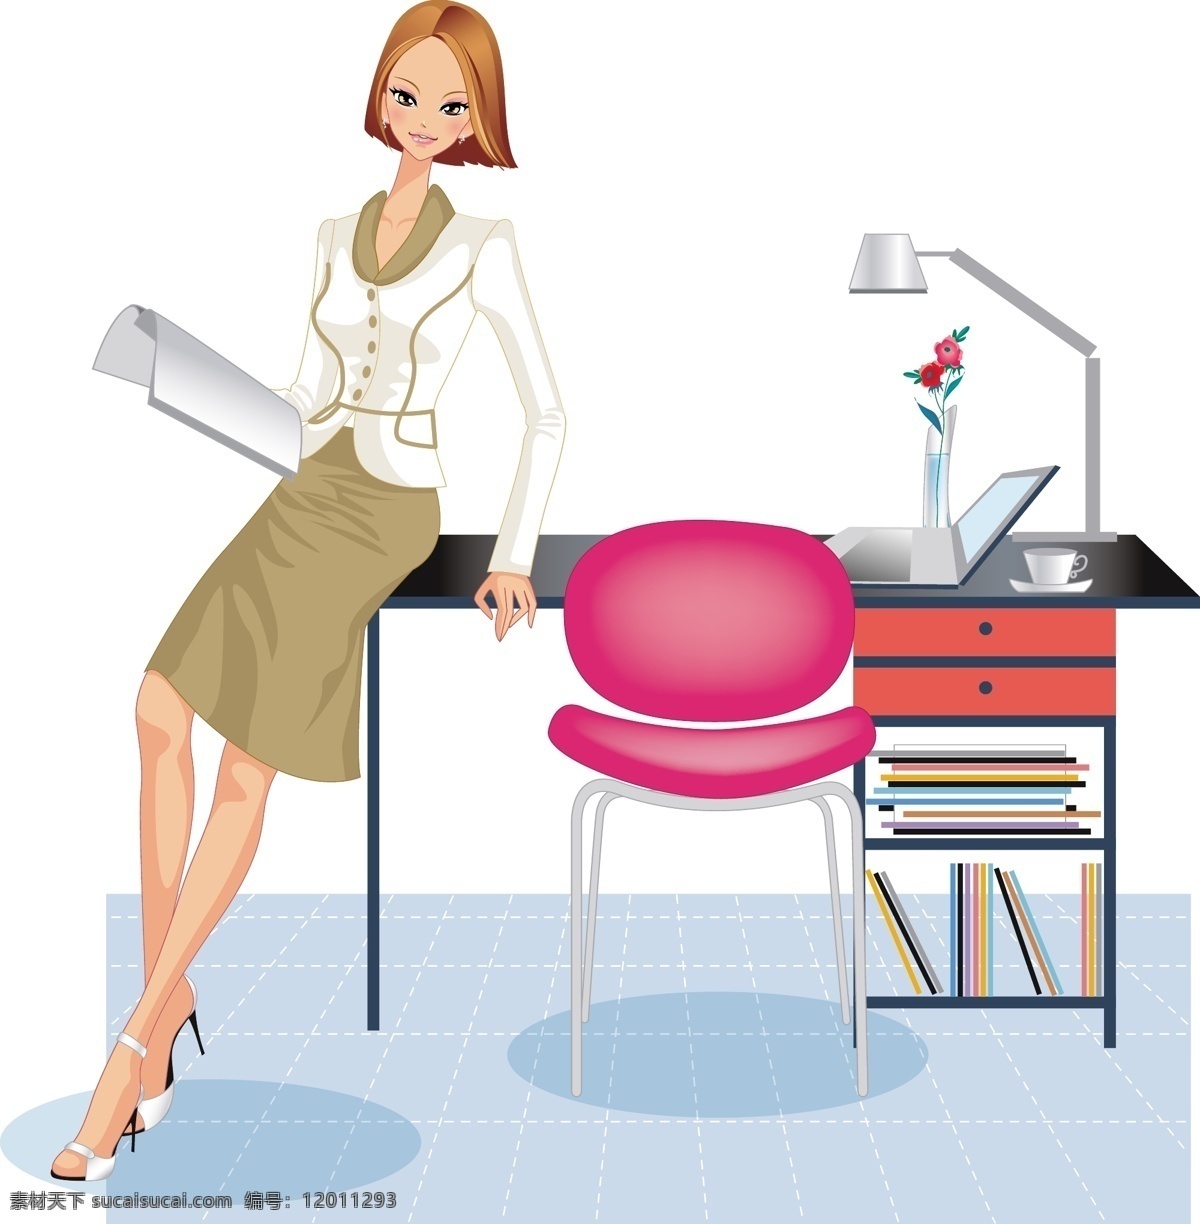 商务 女性 商务女性 职业女性 办公室女性 商业女性 矢量图 矢量人物